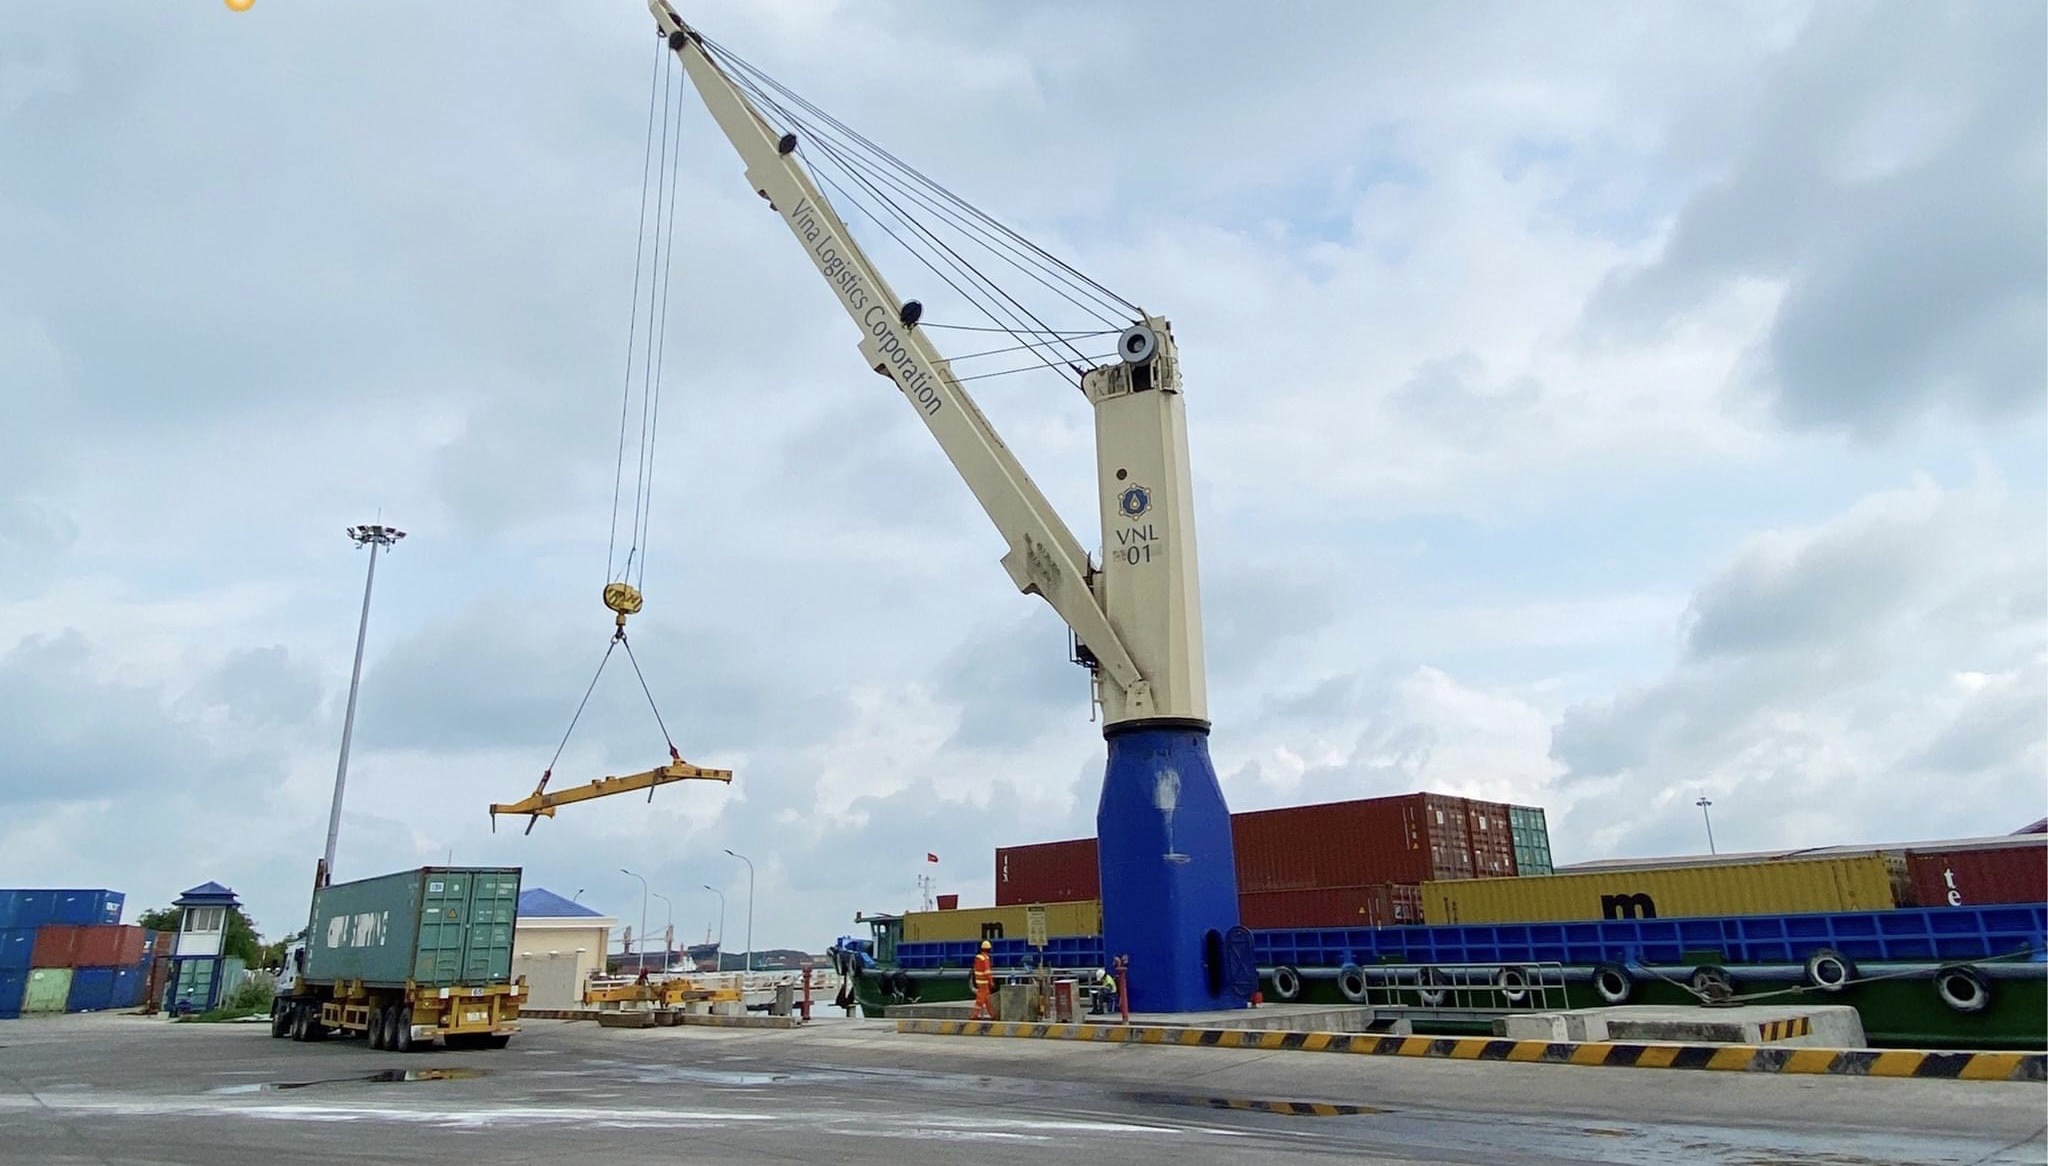 Sau 30 xây dựng, Bà Rịa - Vũng Tàu đã có hệ thống cảng biển tiên tiến, hiện đại, đáp ứng nhu cầu xuất khẩu hàng hóa quốc tế cũng như nội địa. Trong ảnh: Xếp dỡ hàng container tại Cảng dịch vụ tổng hợp Hưng Thái, TX. Phú Mỹ.